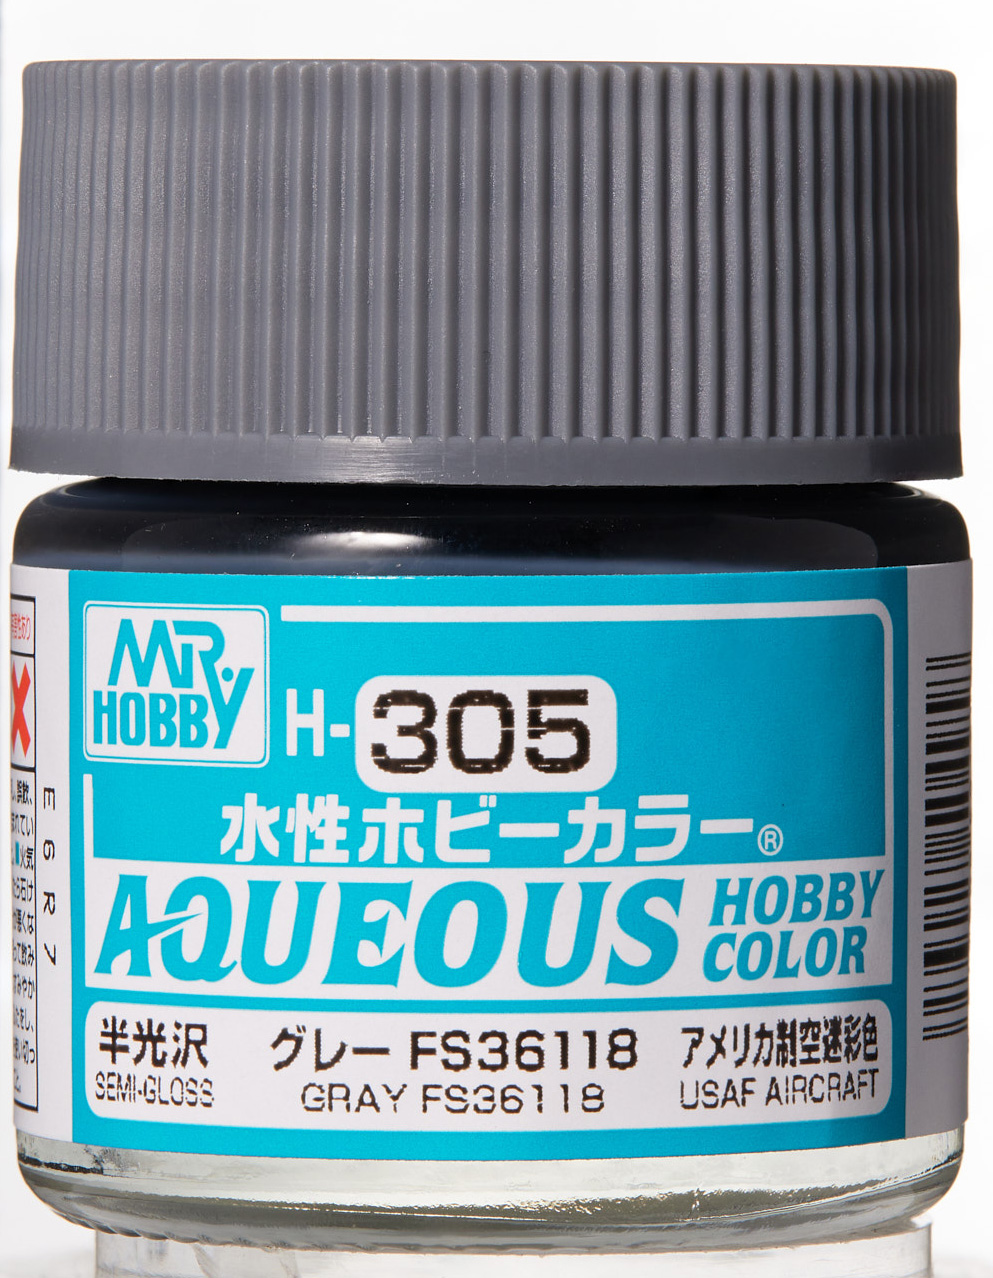 Mr. Aqueous Hobby Color - Gray FS36118 - H305 - Grau FS36118